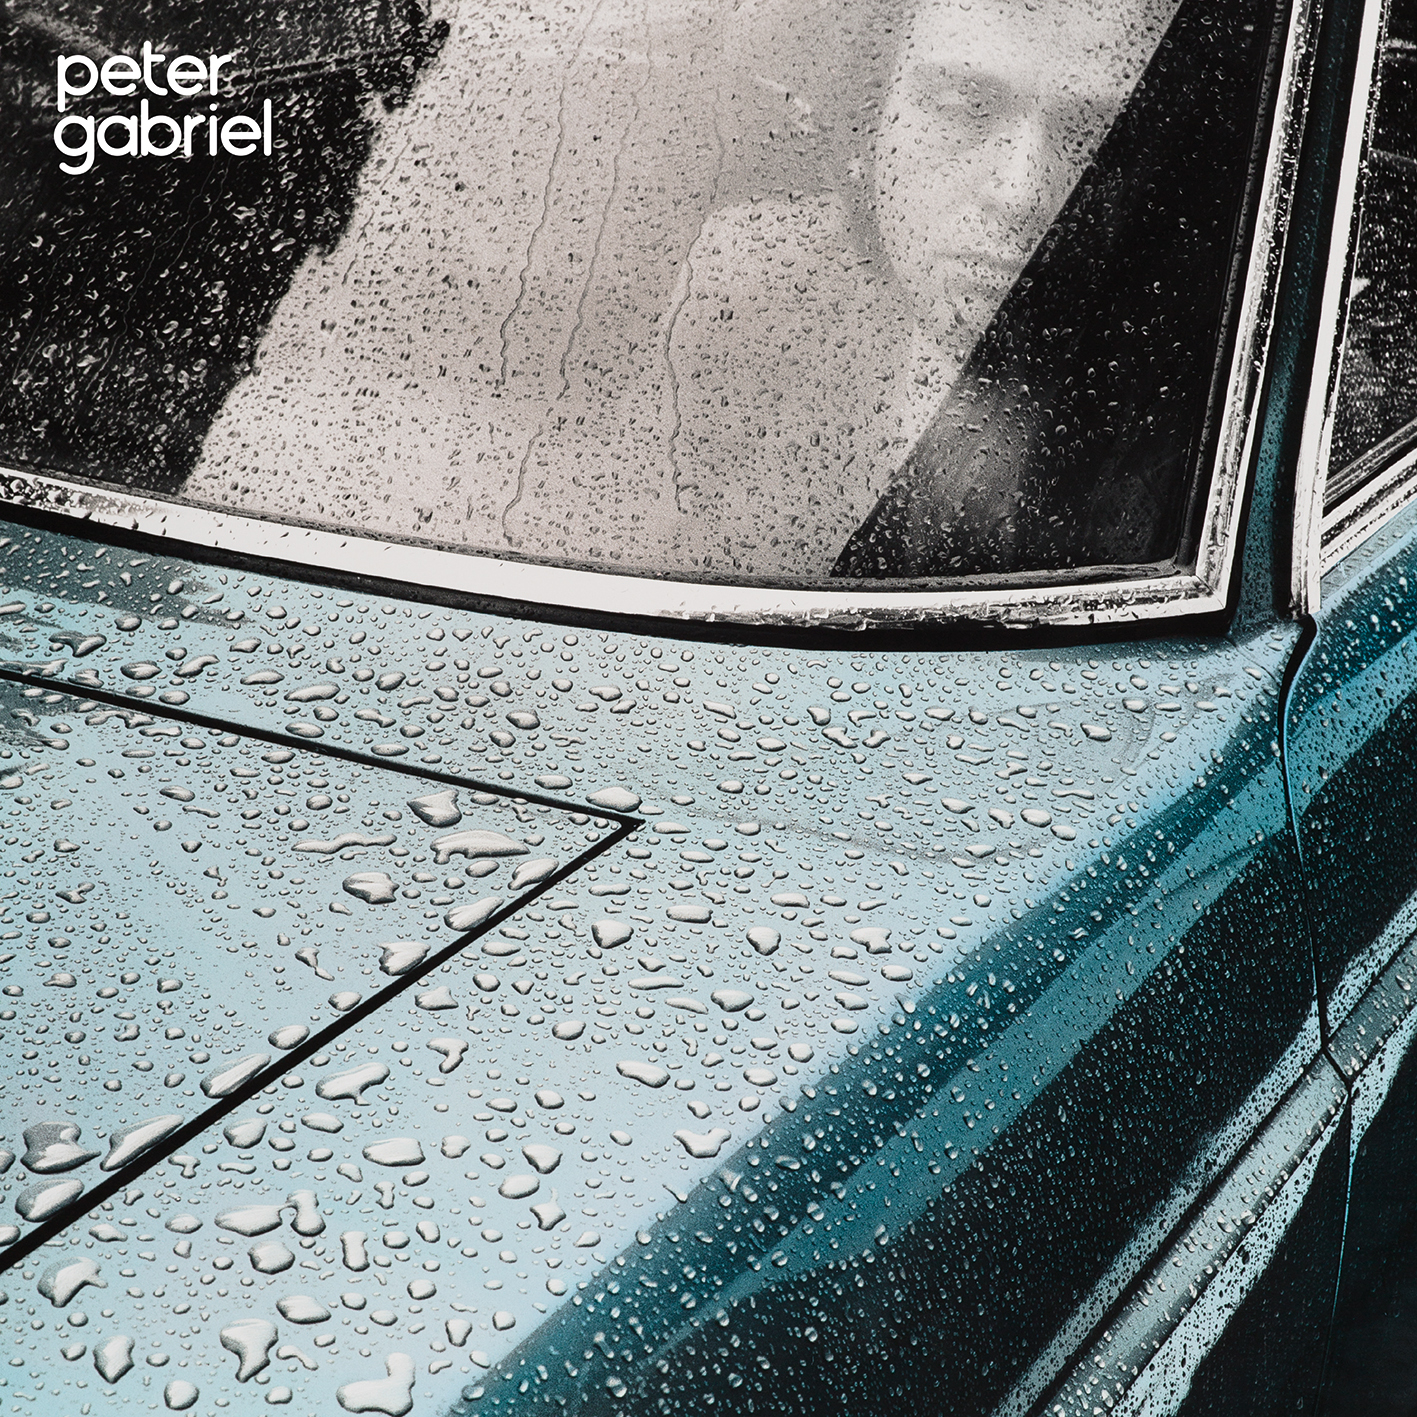 Album Art for Peter Gabriel 1 by Peter Gabriel